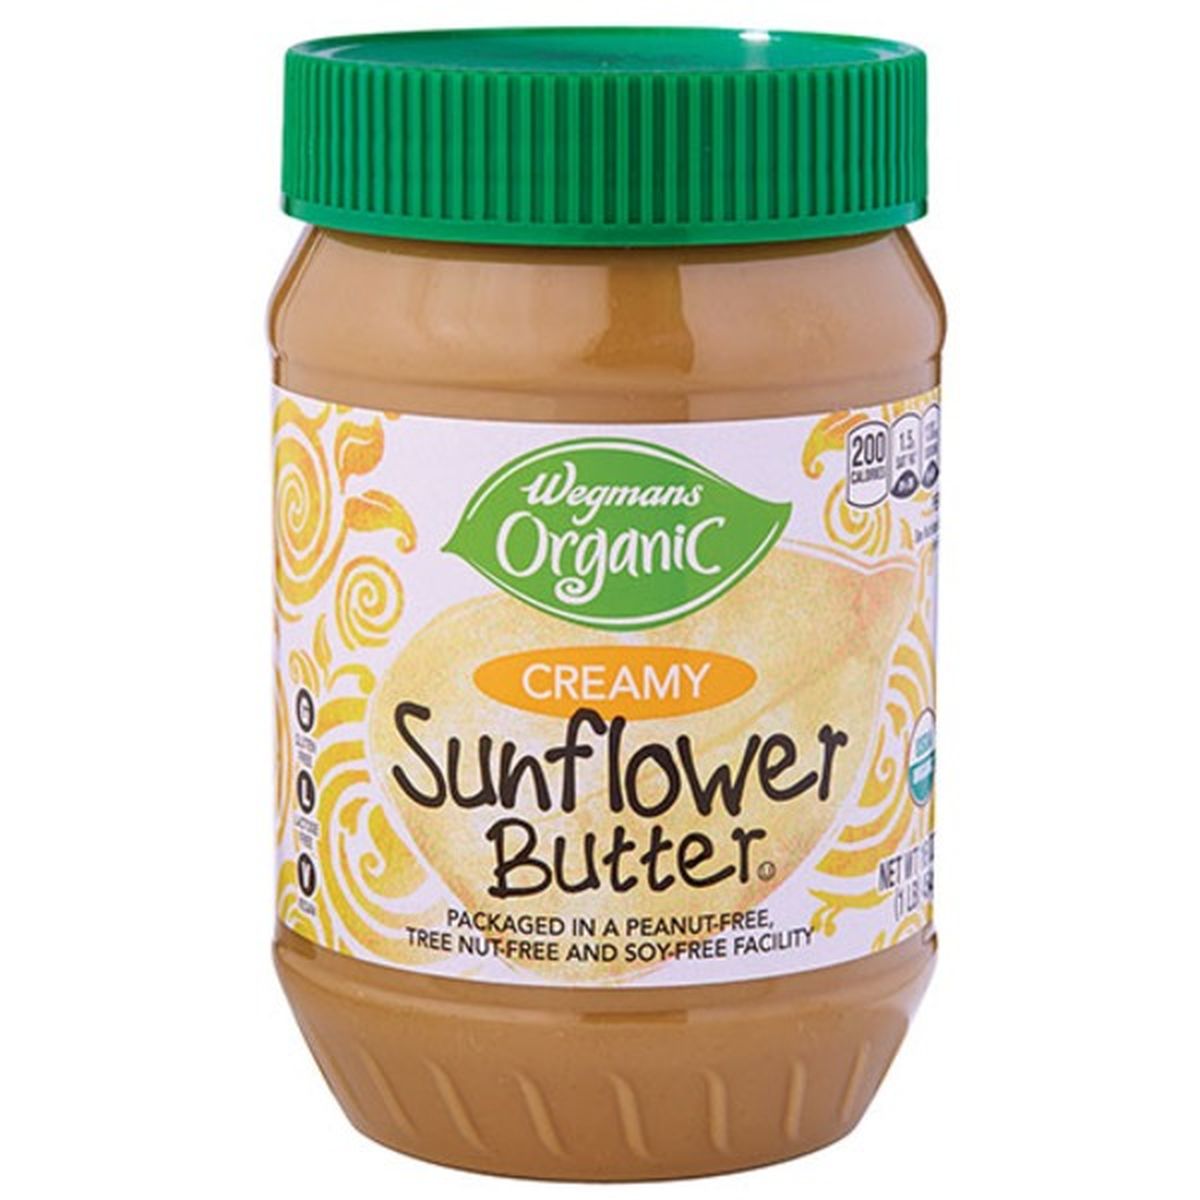 Calories in Wegmans Organic Creamy Sunflower Seed Butter